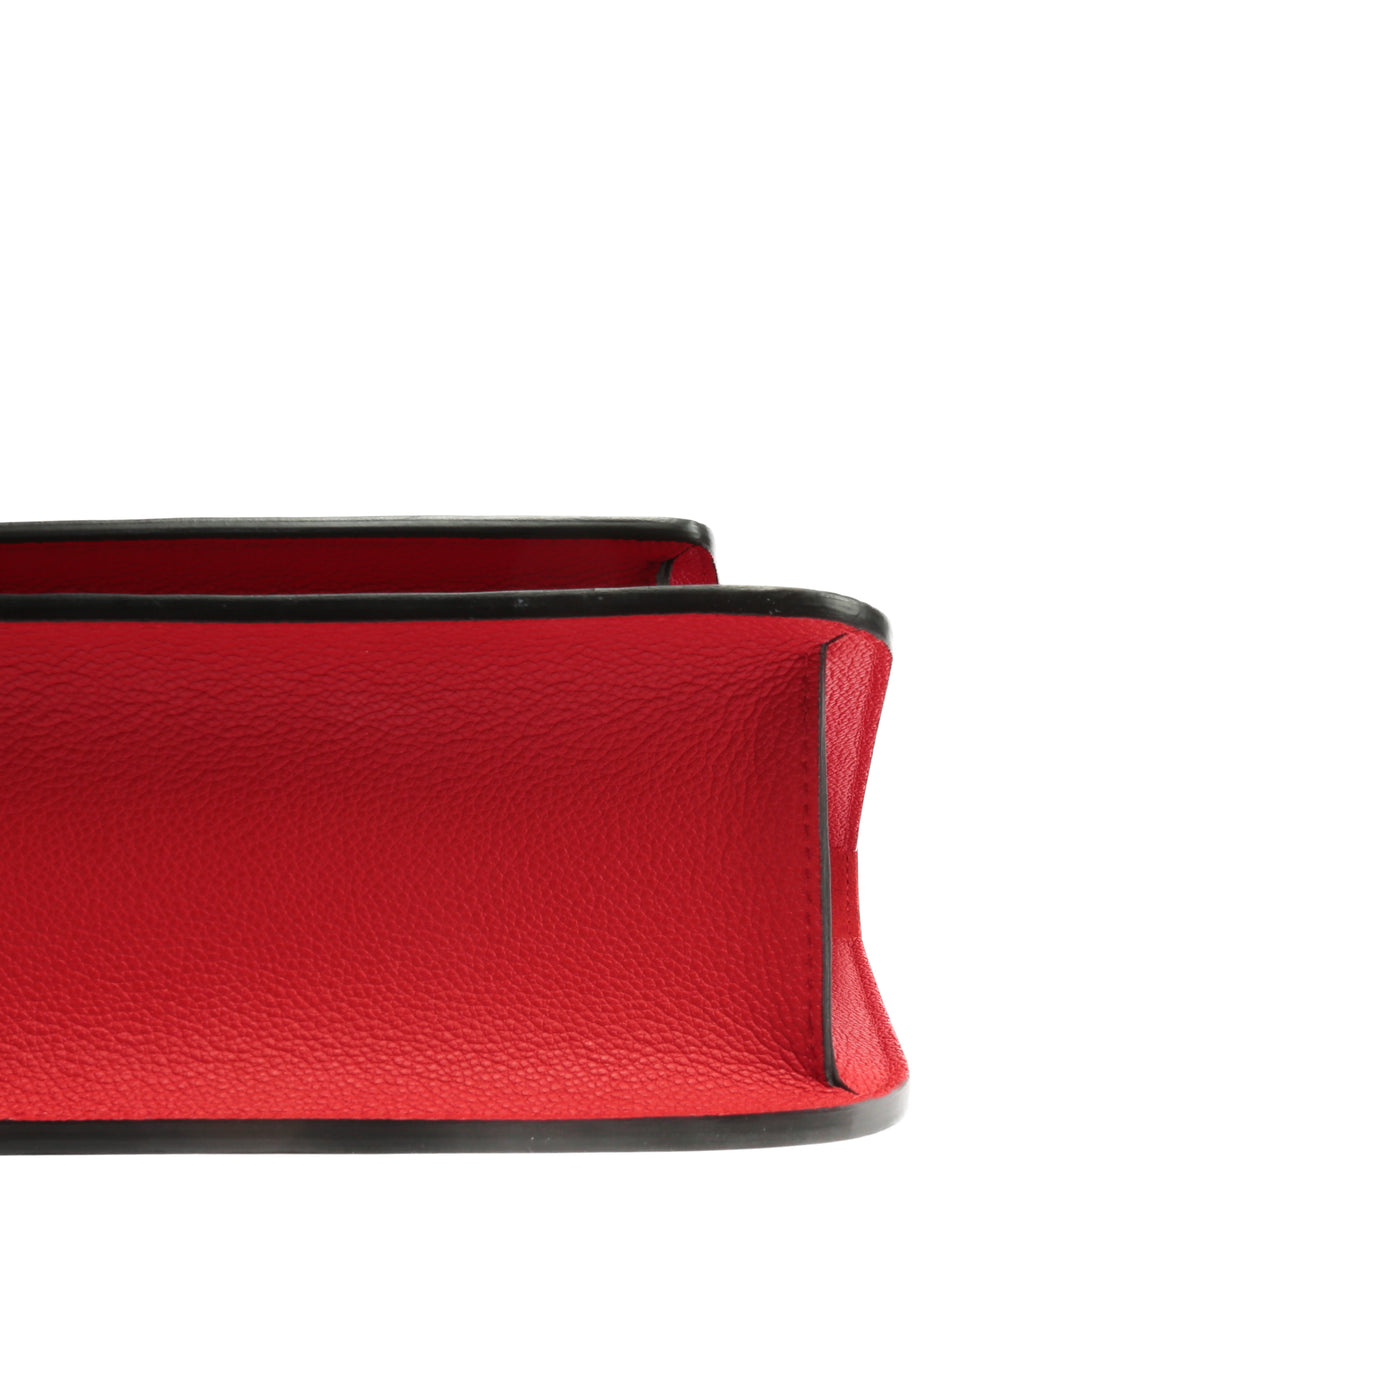 Louis Vuitton, Bags, Louis Vuitton Red Epi Monceau Bag